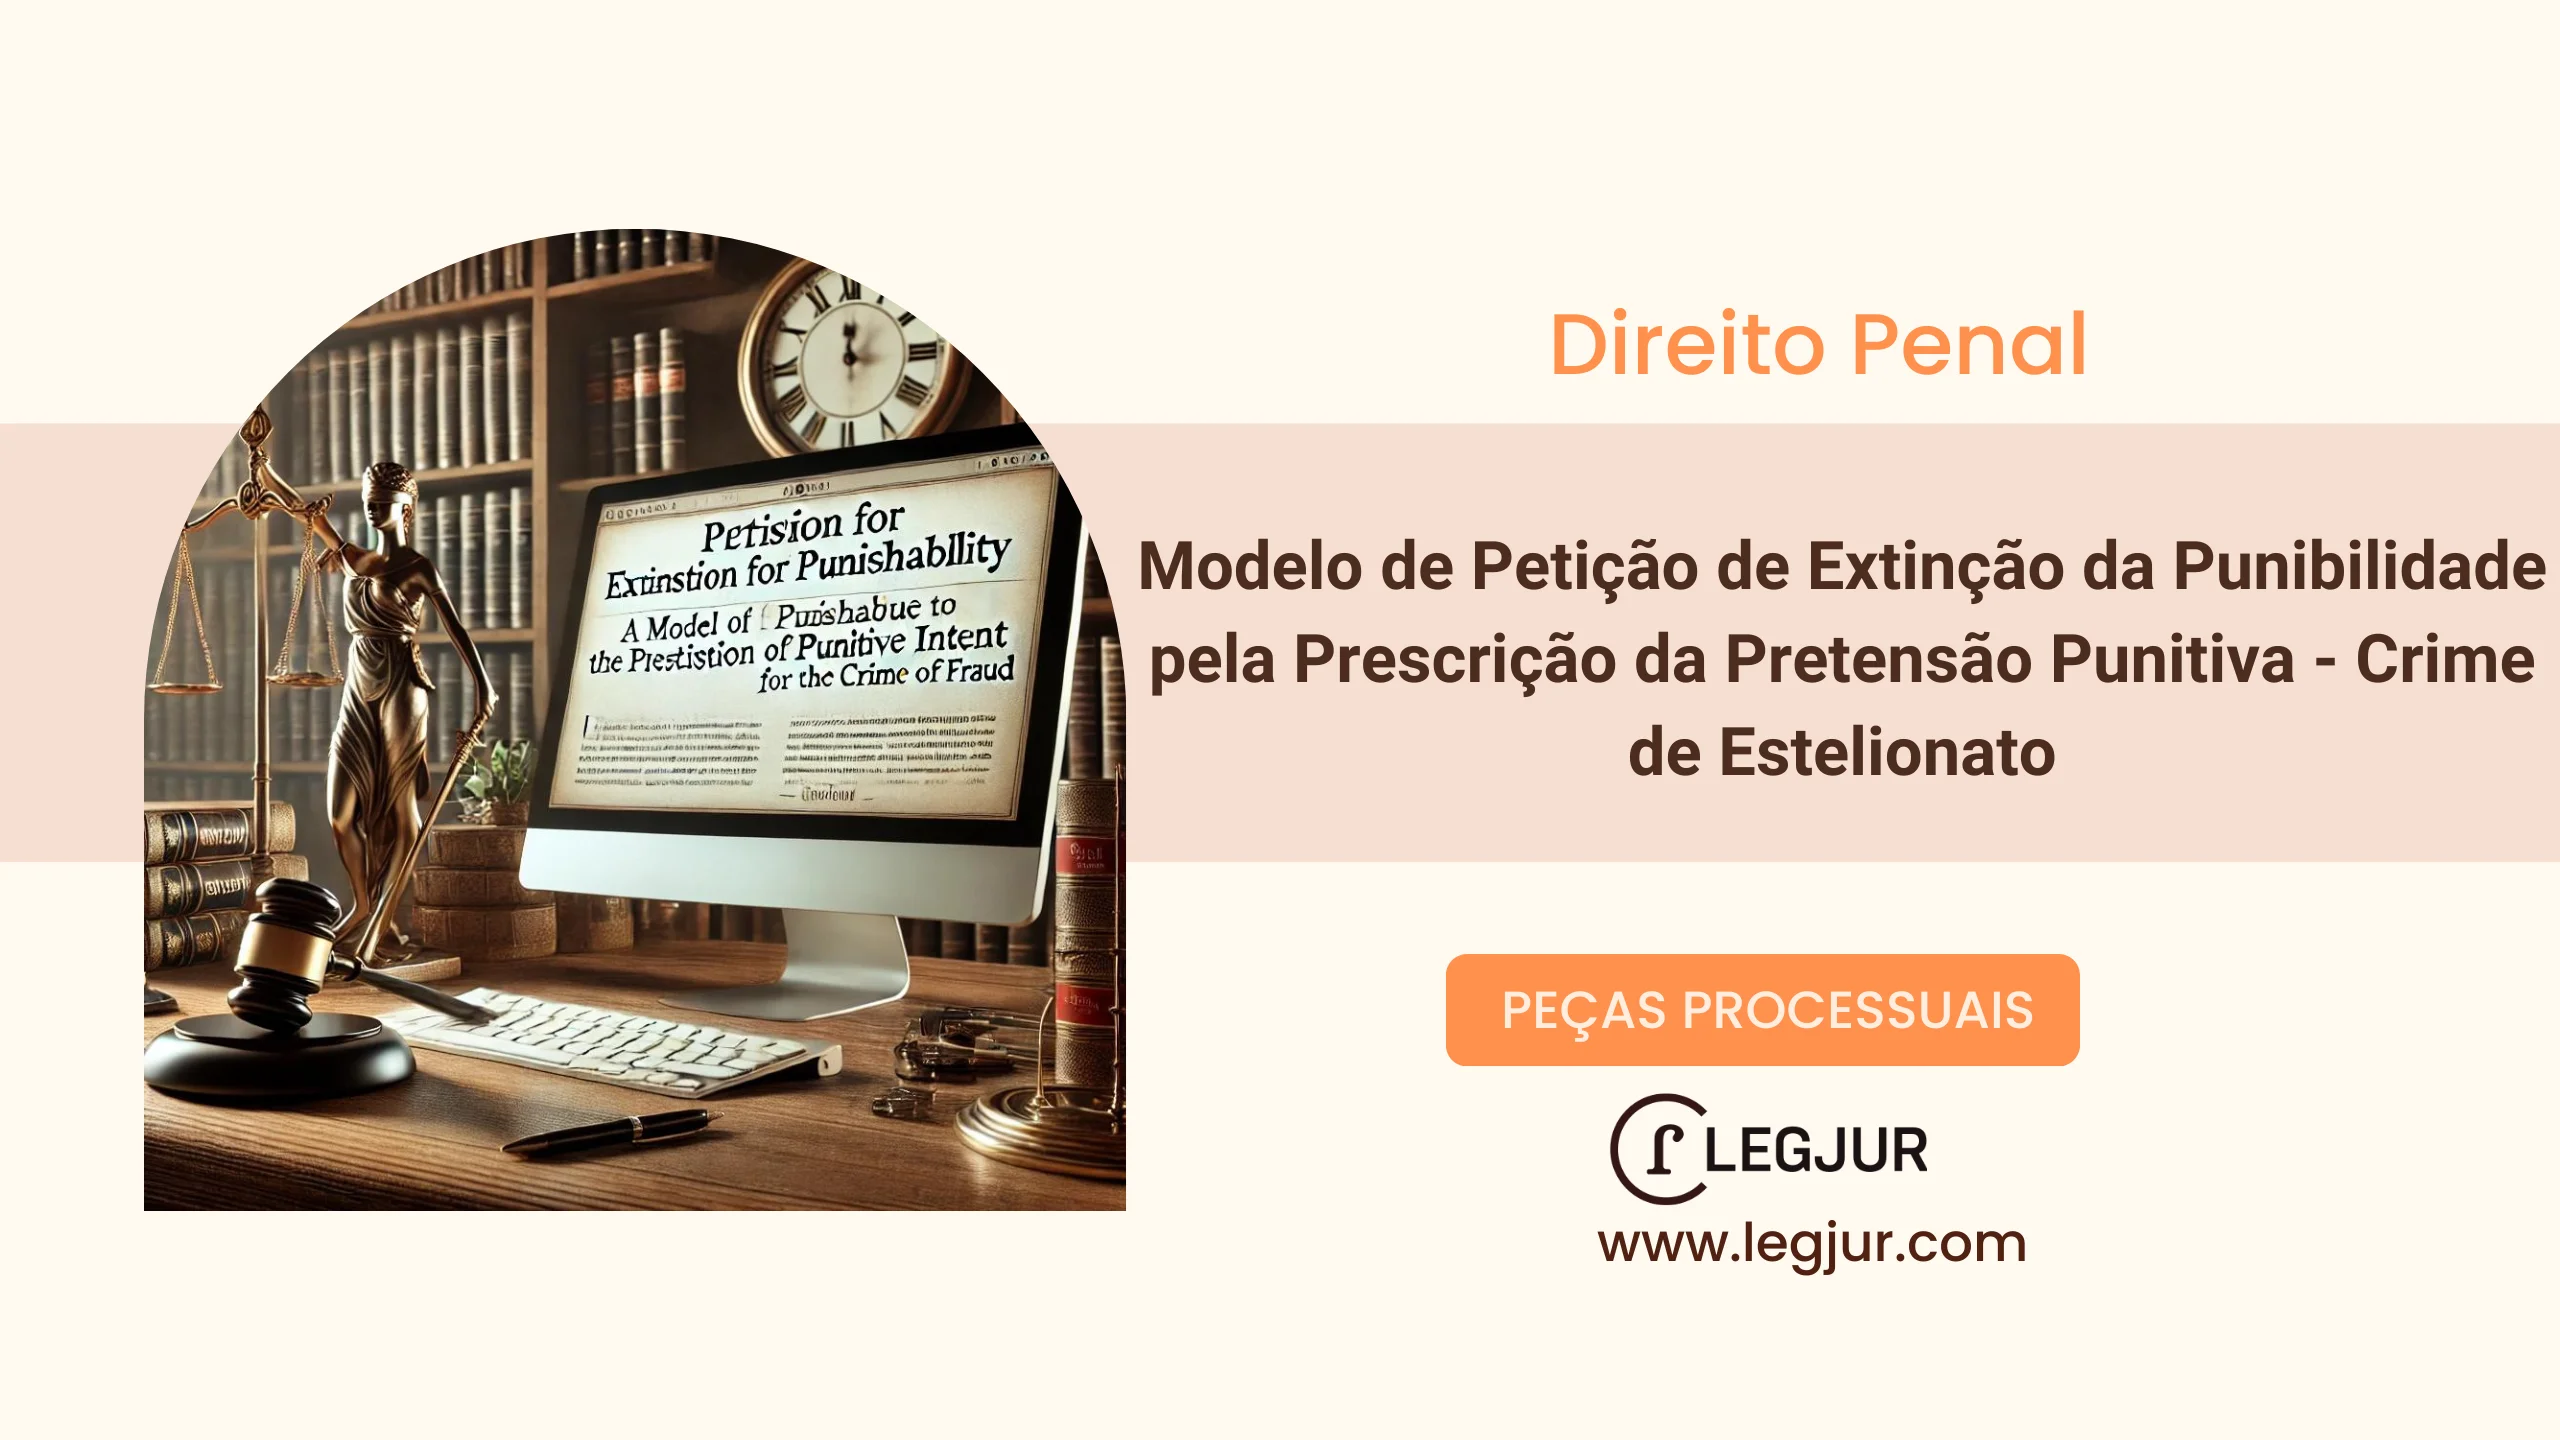 Modelo de Petição de Extinção da Punibilidade pela Prescrição da Pretensão Punitiva - Crime de Estelionato